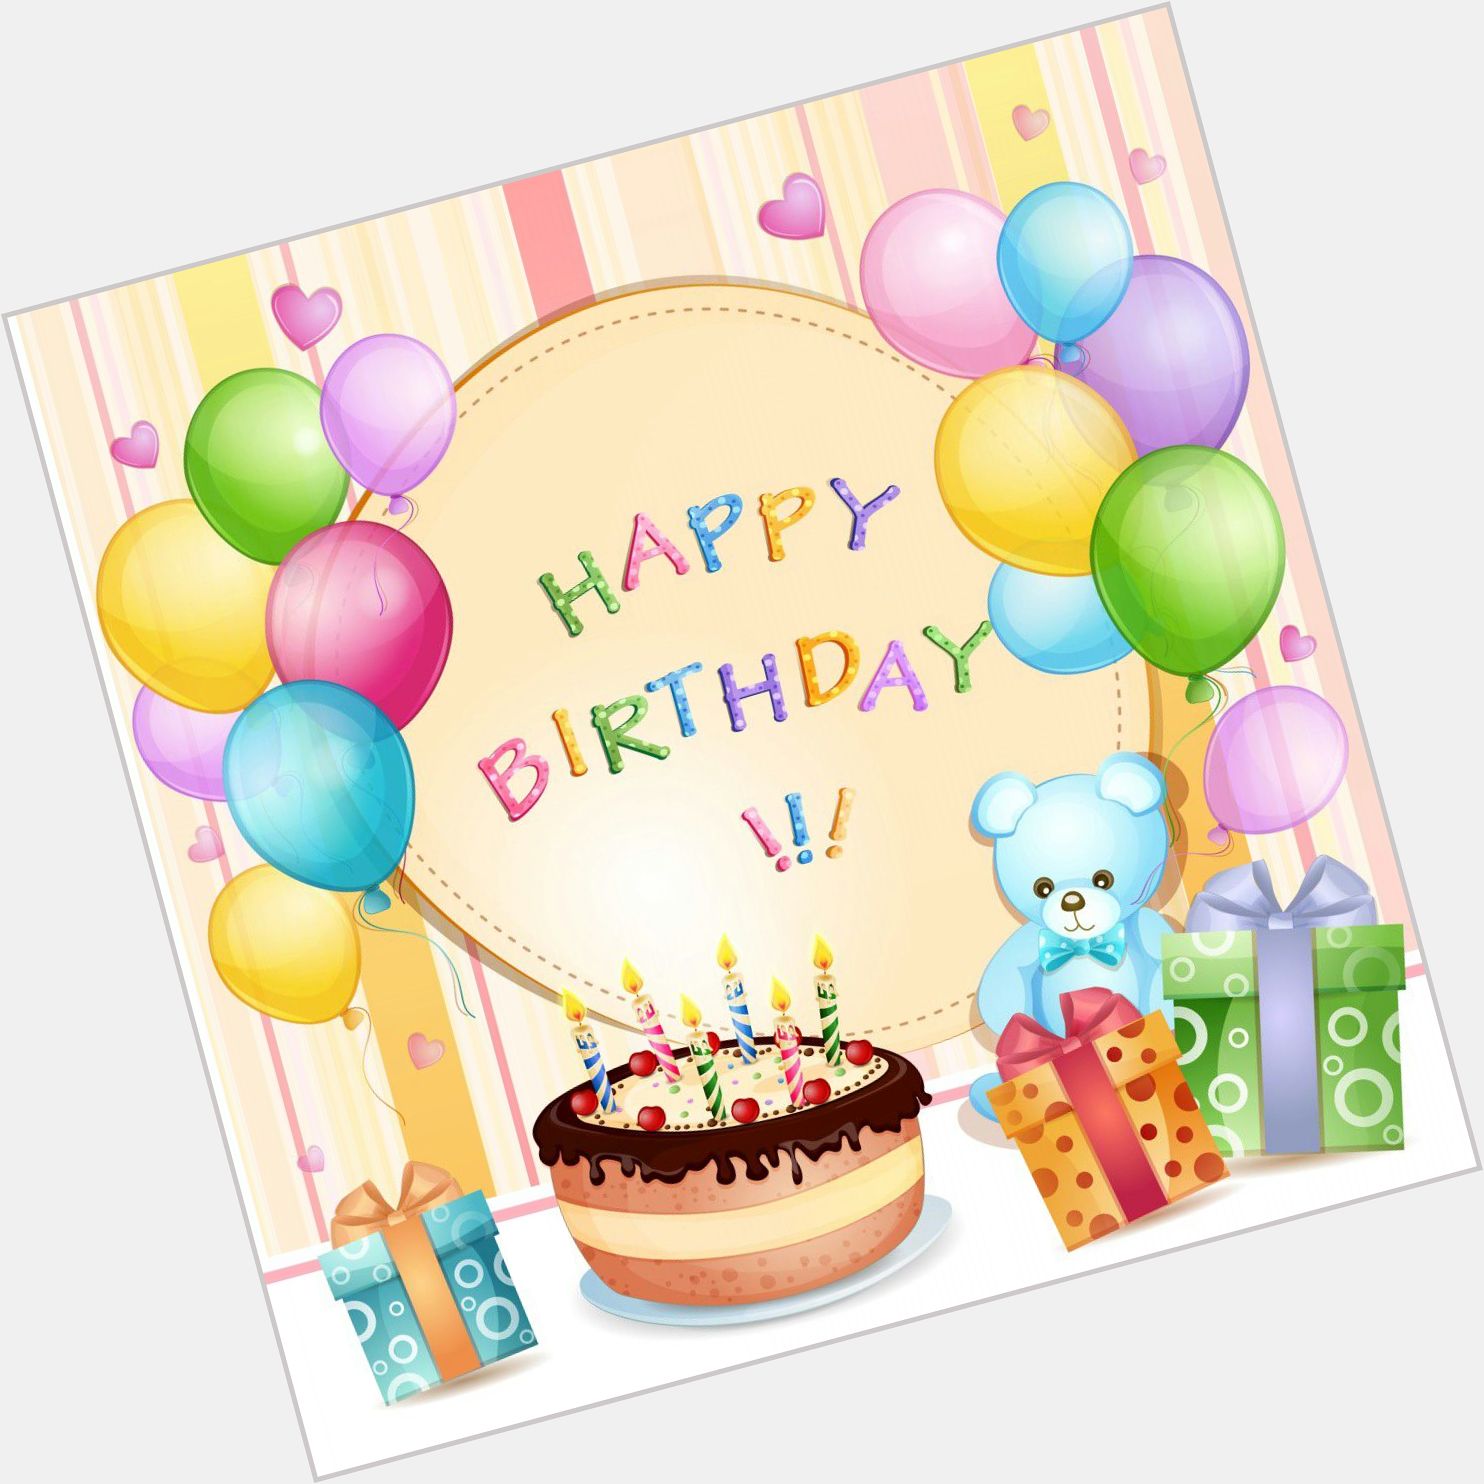 Happy Birthday Ajay Devgan Sir, 
Many many happy returns of the day, 